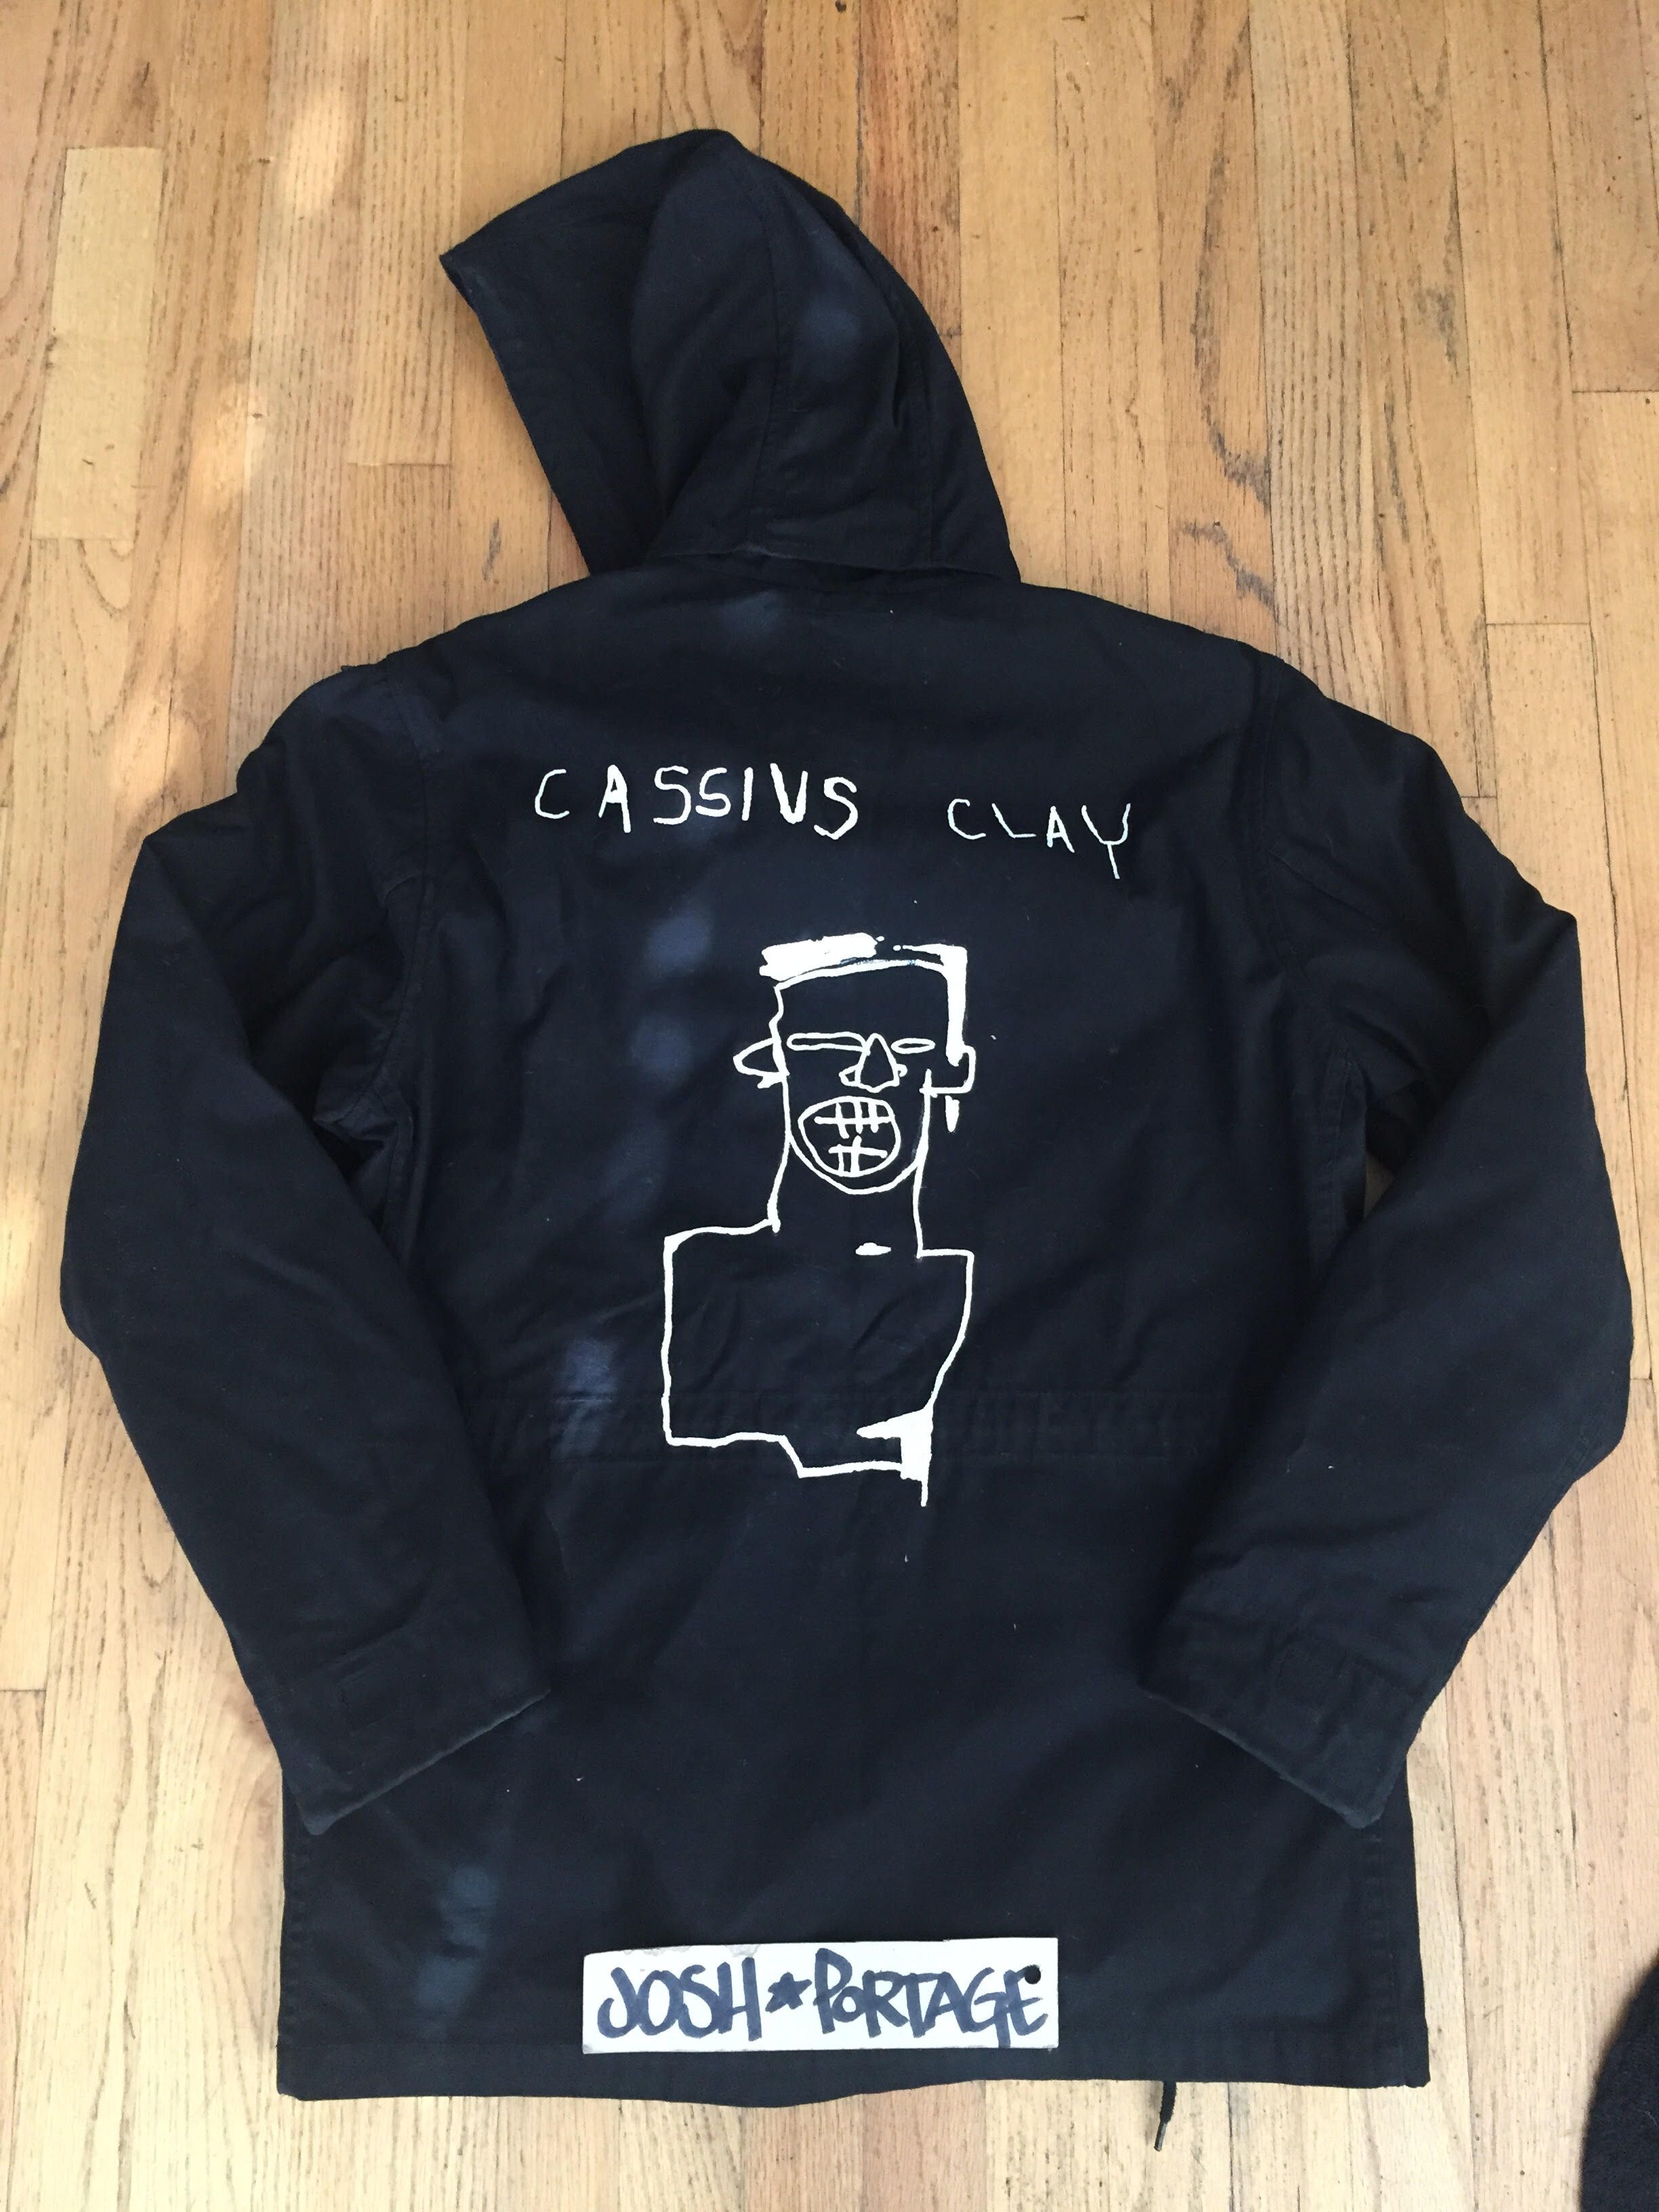 Supreme M-65 Cassius Clay Basquiat | Grailed